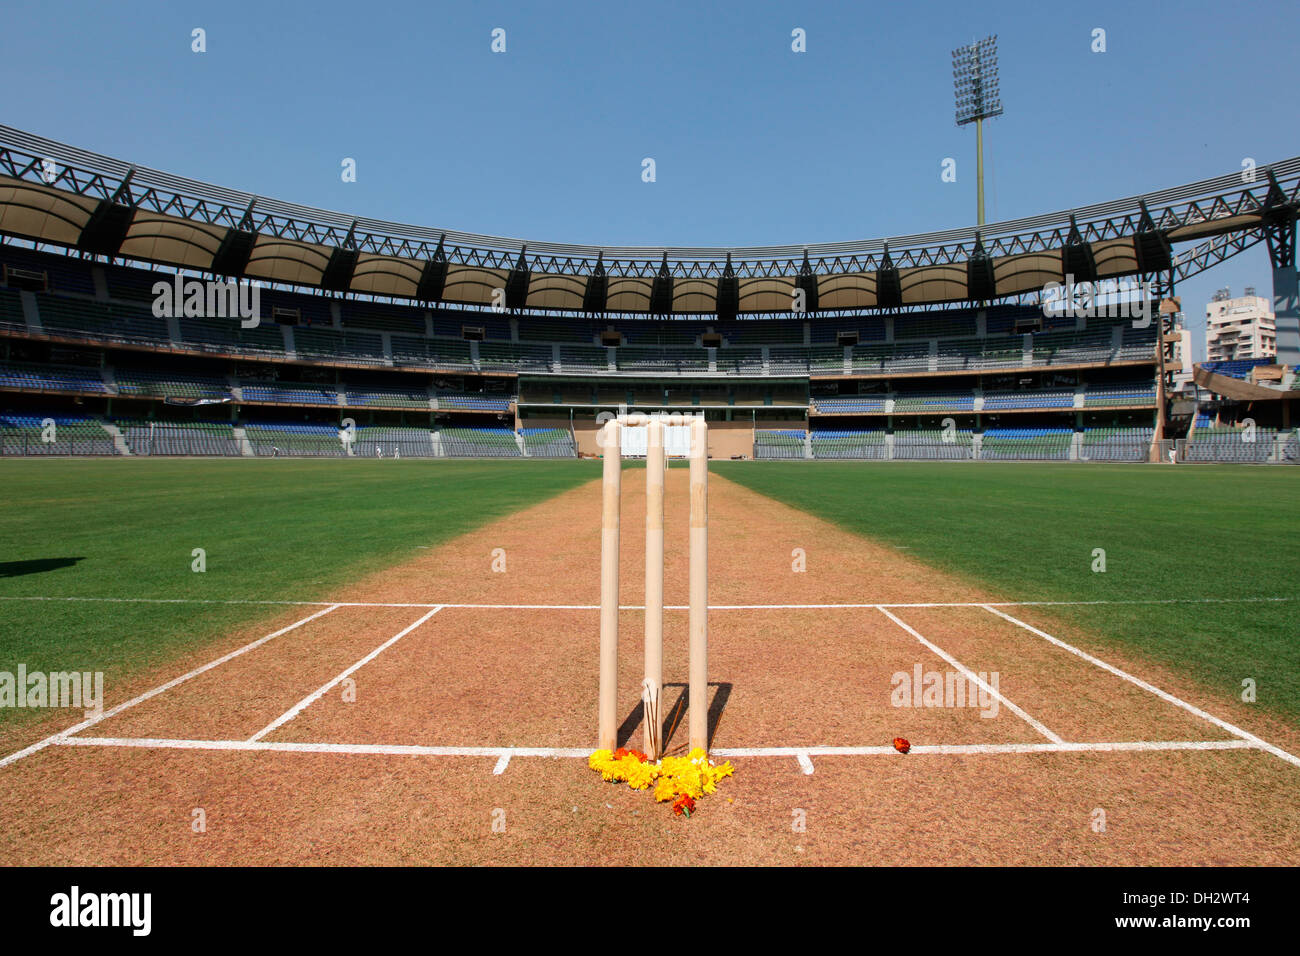 Coups de cricket et terrain de Wankhede Stadium Bombay Mumbai Maharashtra Inde Asie asiatique Indien Banque D'Images